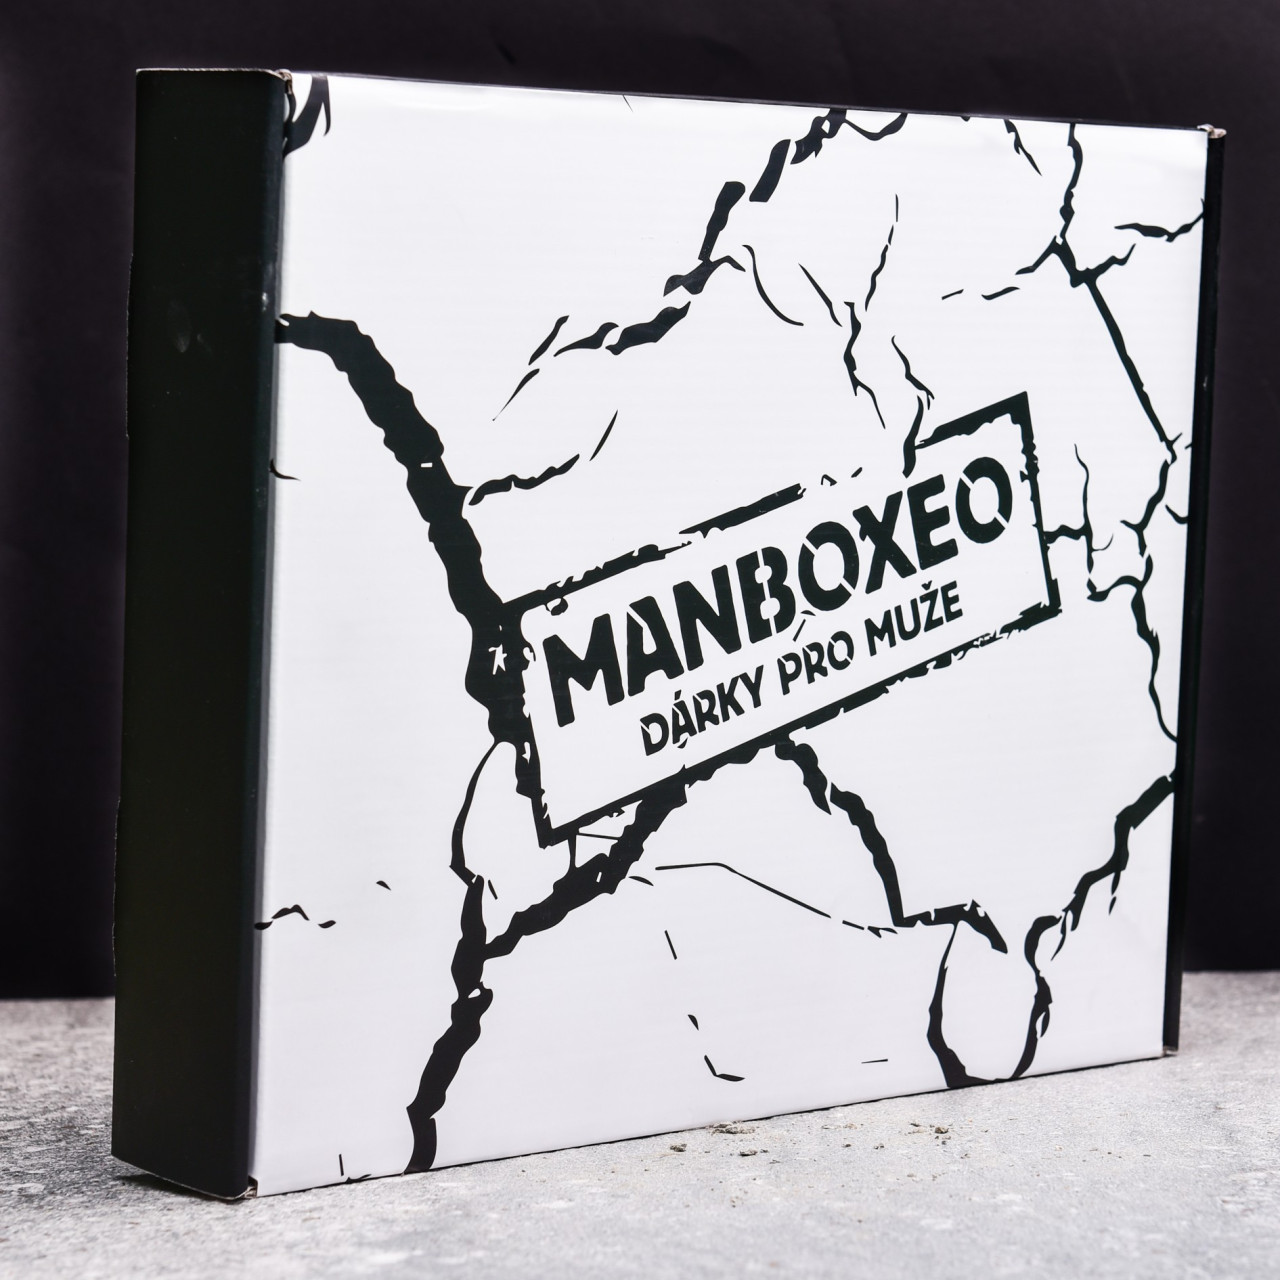 Drkov krabice Manboxeo - drek pro mue k vro.jpg